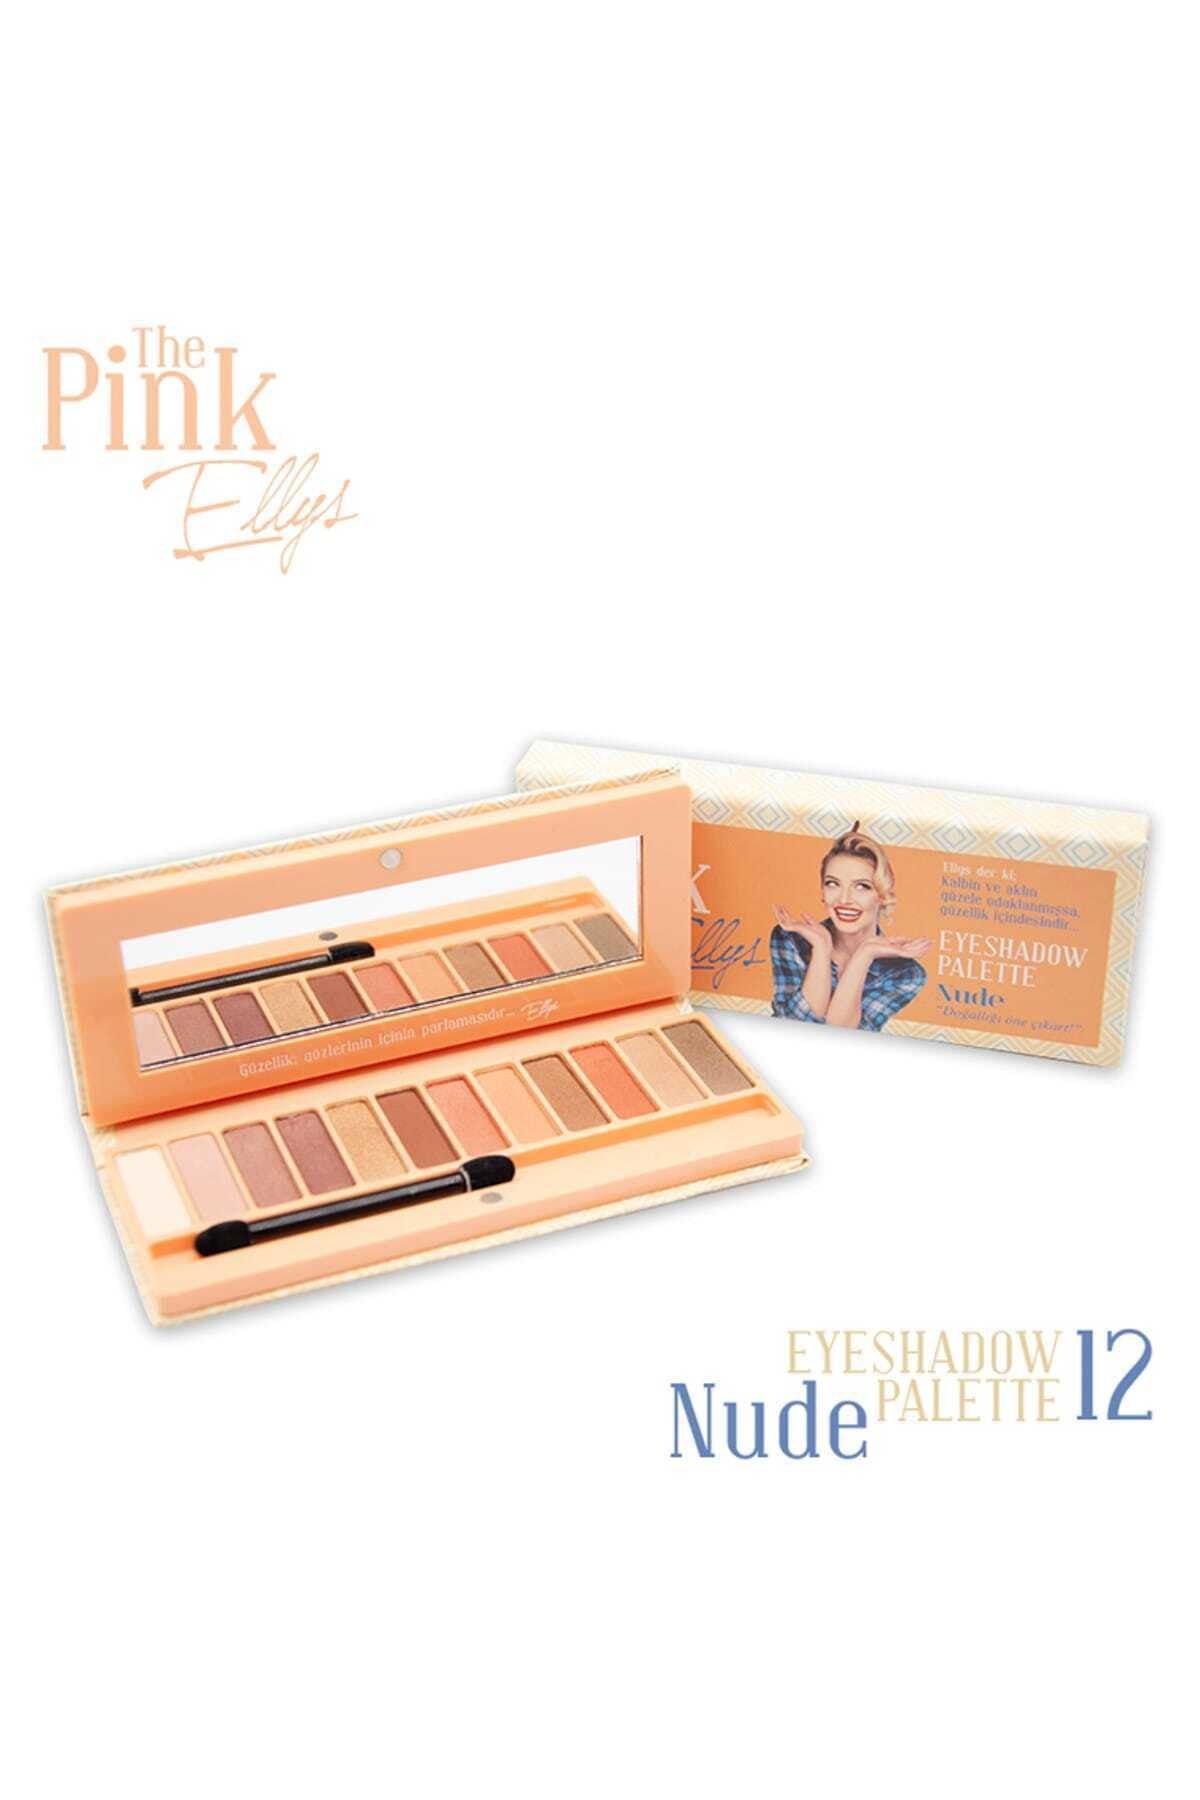 The Pink Ellys Eyeshadow Palette Nude 12li